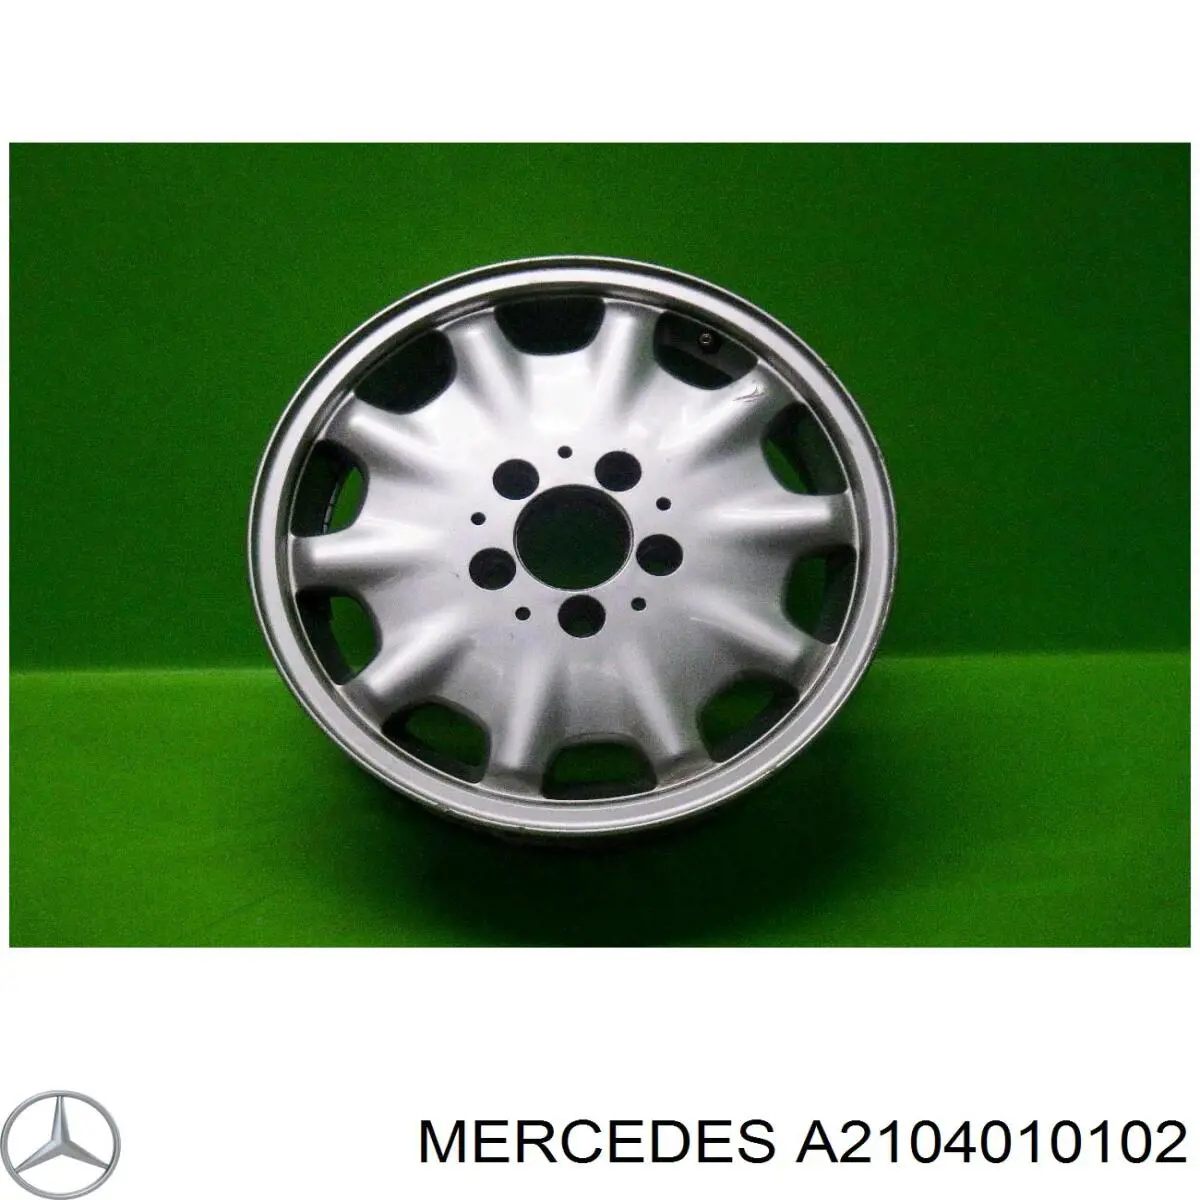 Discos de roda de aleação ligeira (de aleação ligeira, de titânio) para Mercedes E (W210)